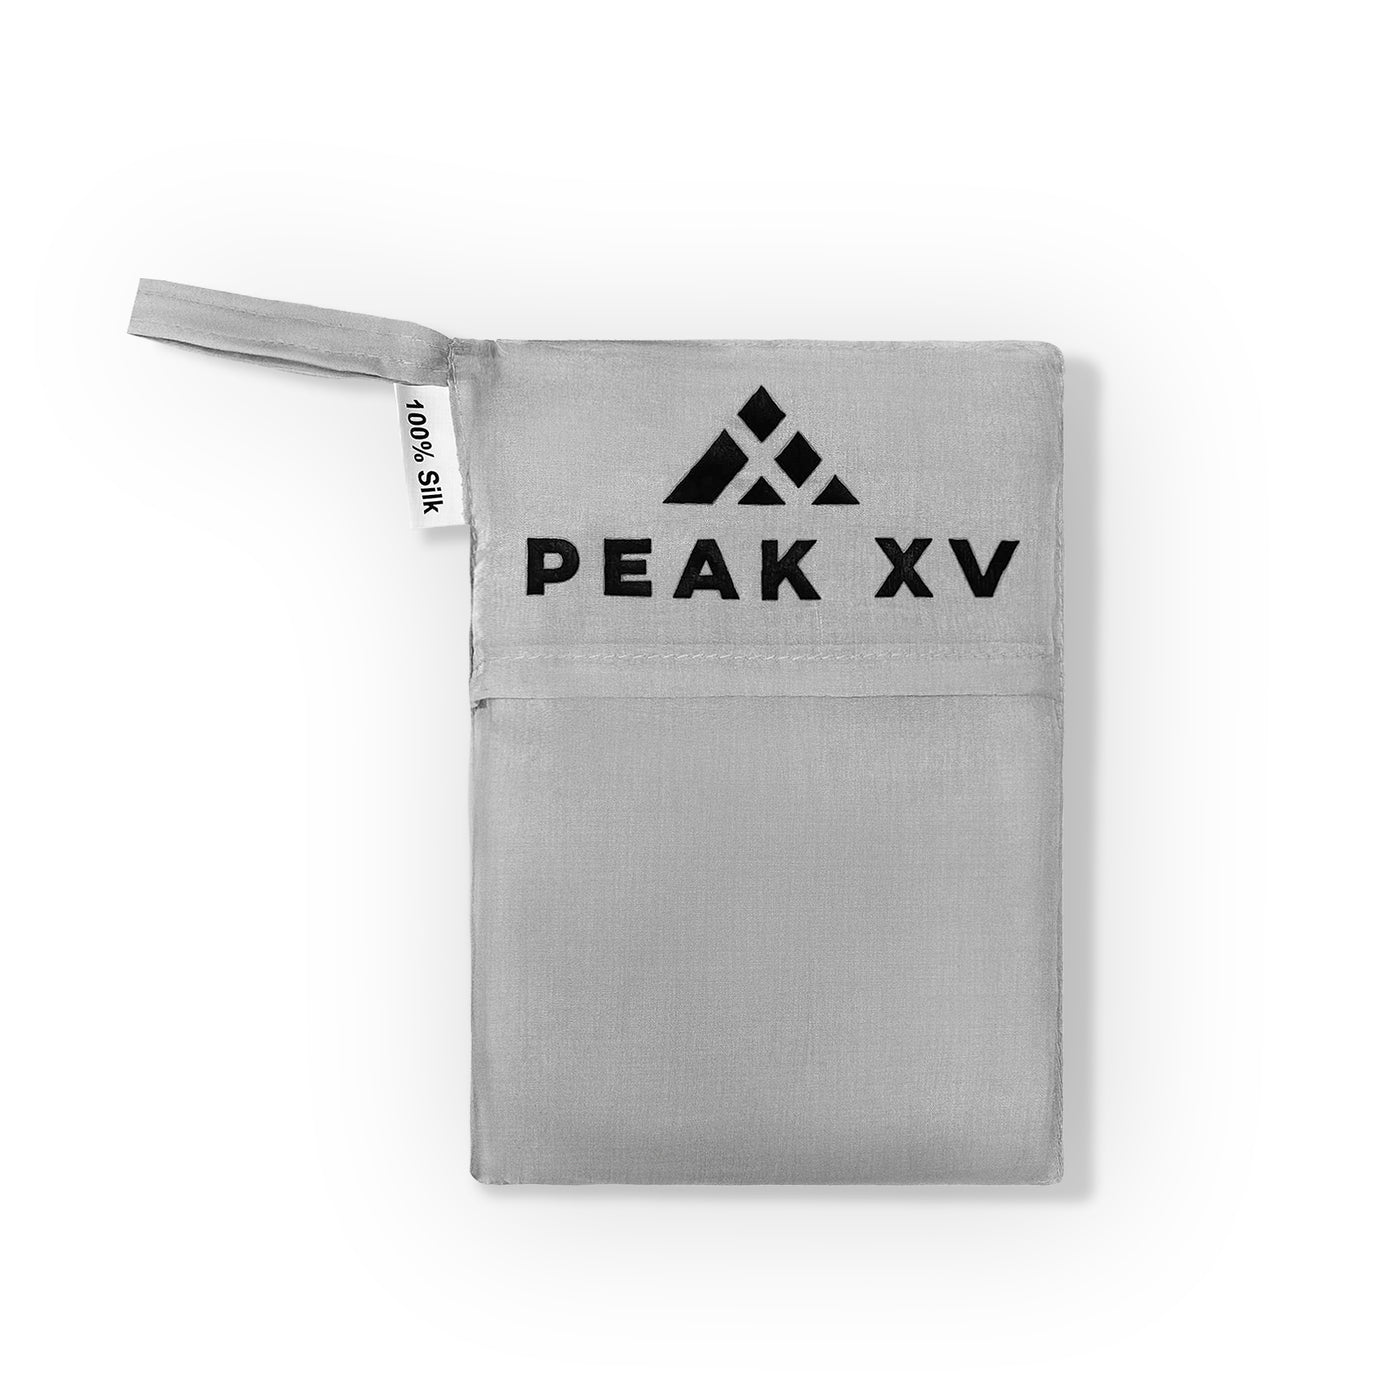 Peak XV 100% Silk Sleeping Bag Liner